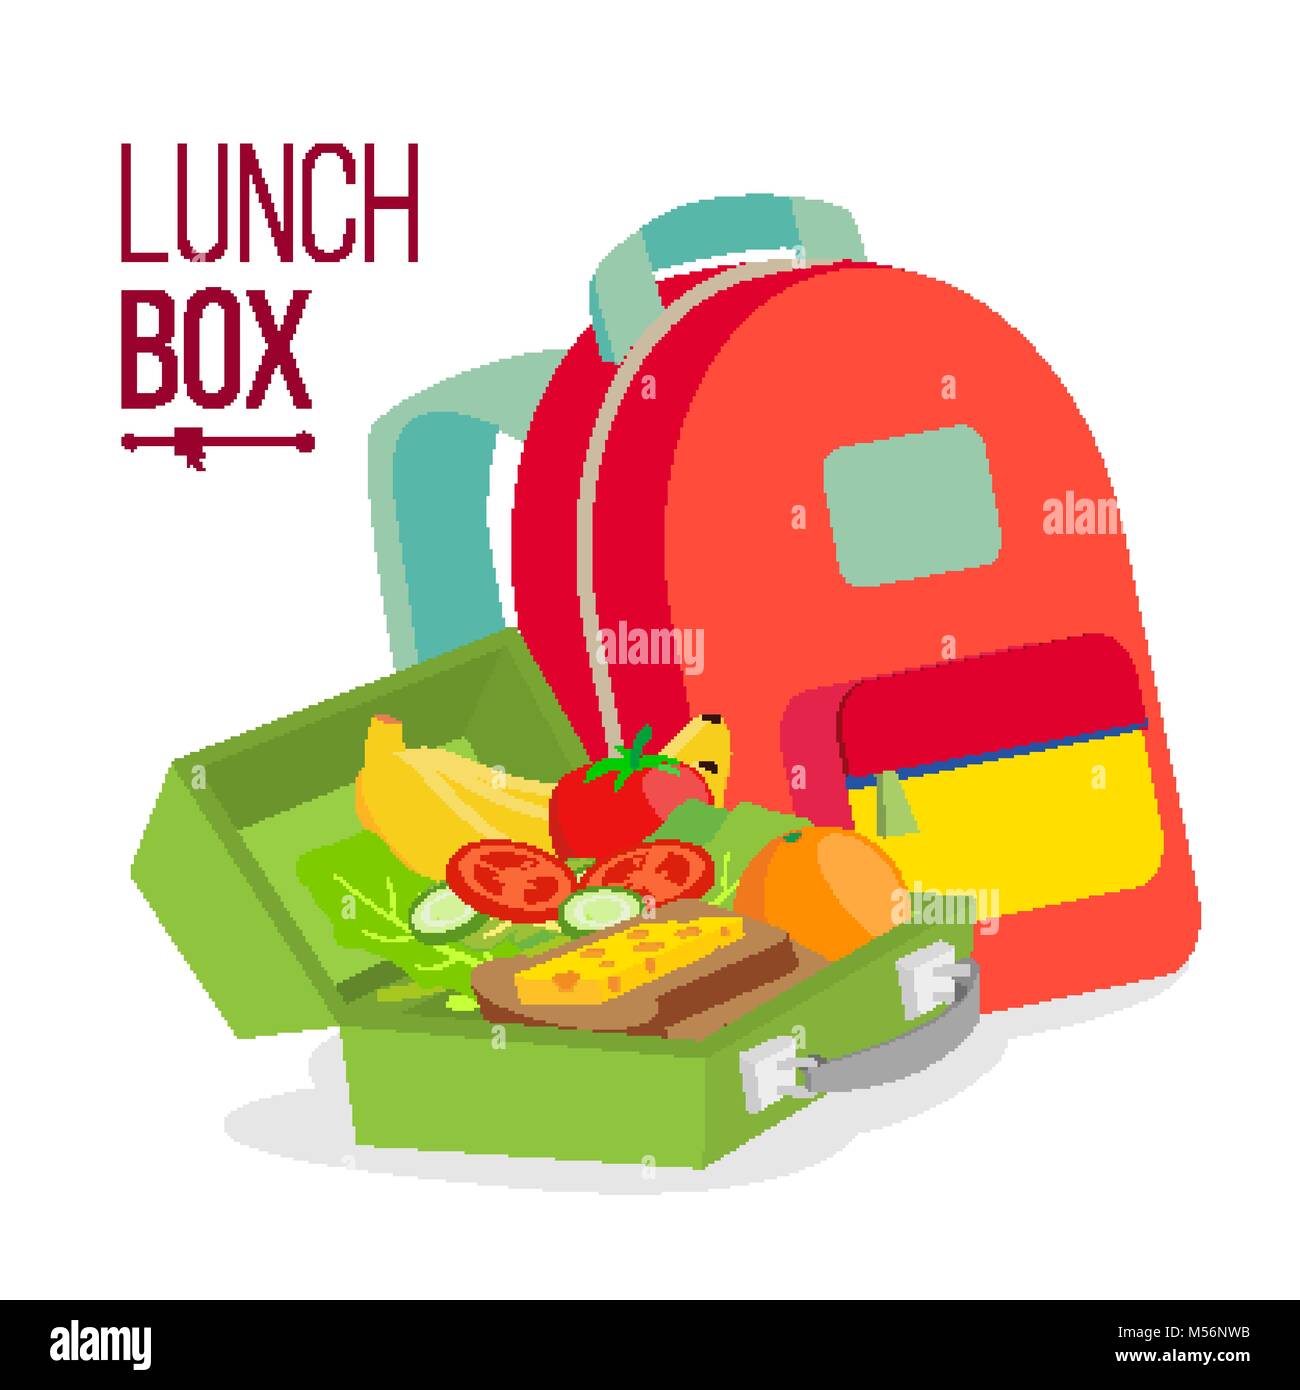 Lunch Box sac et vecteur. Sac avec des aliments sains pour les enfants.  Télévision Cartoon illustration isolé Image Vectorielle Stock - Alamy